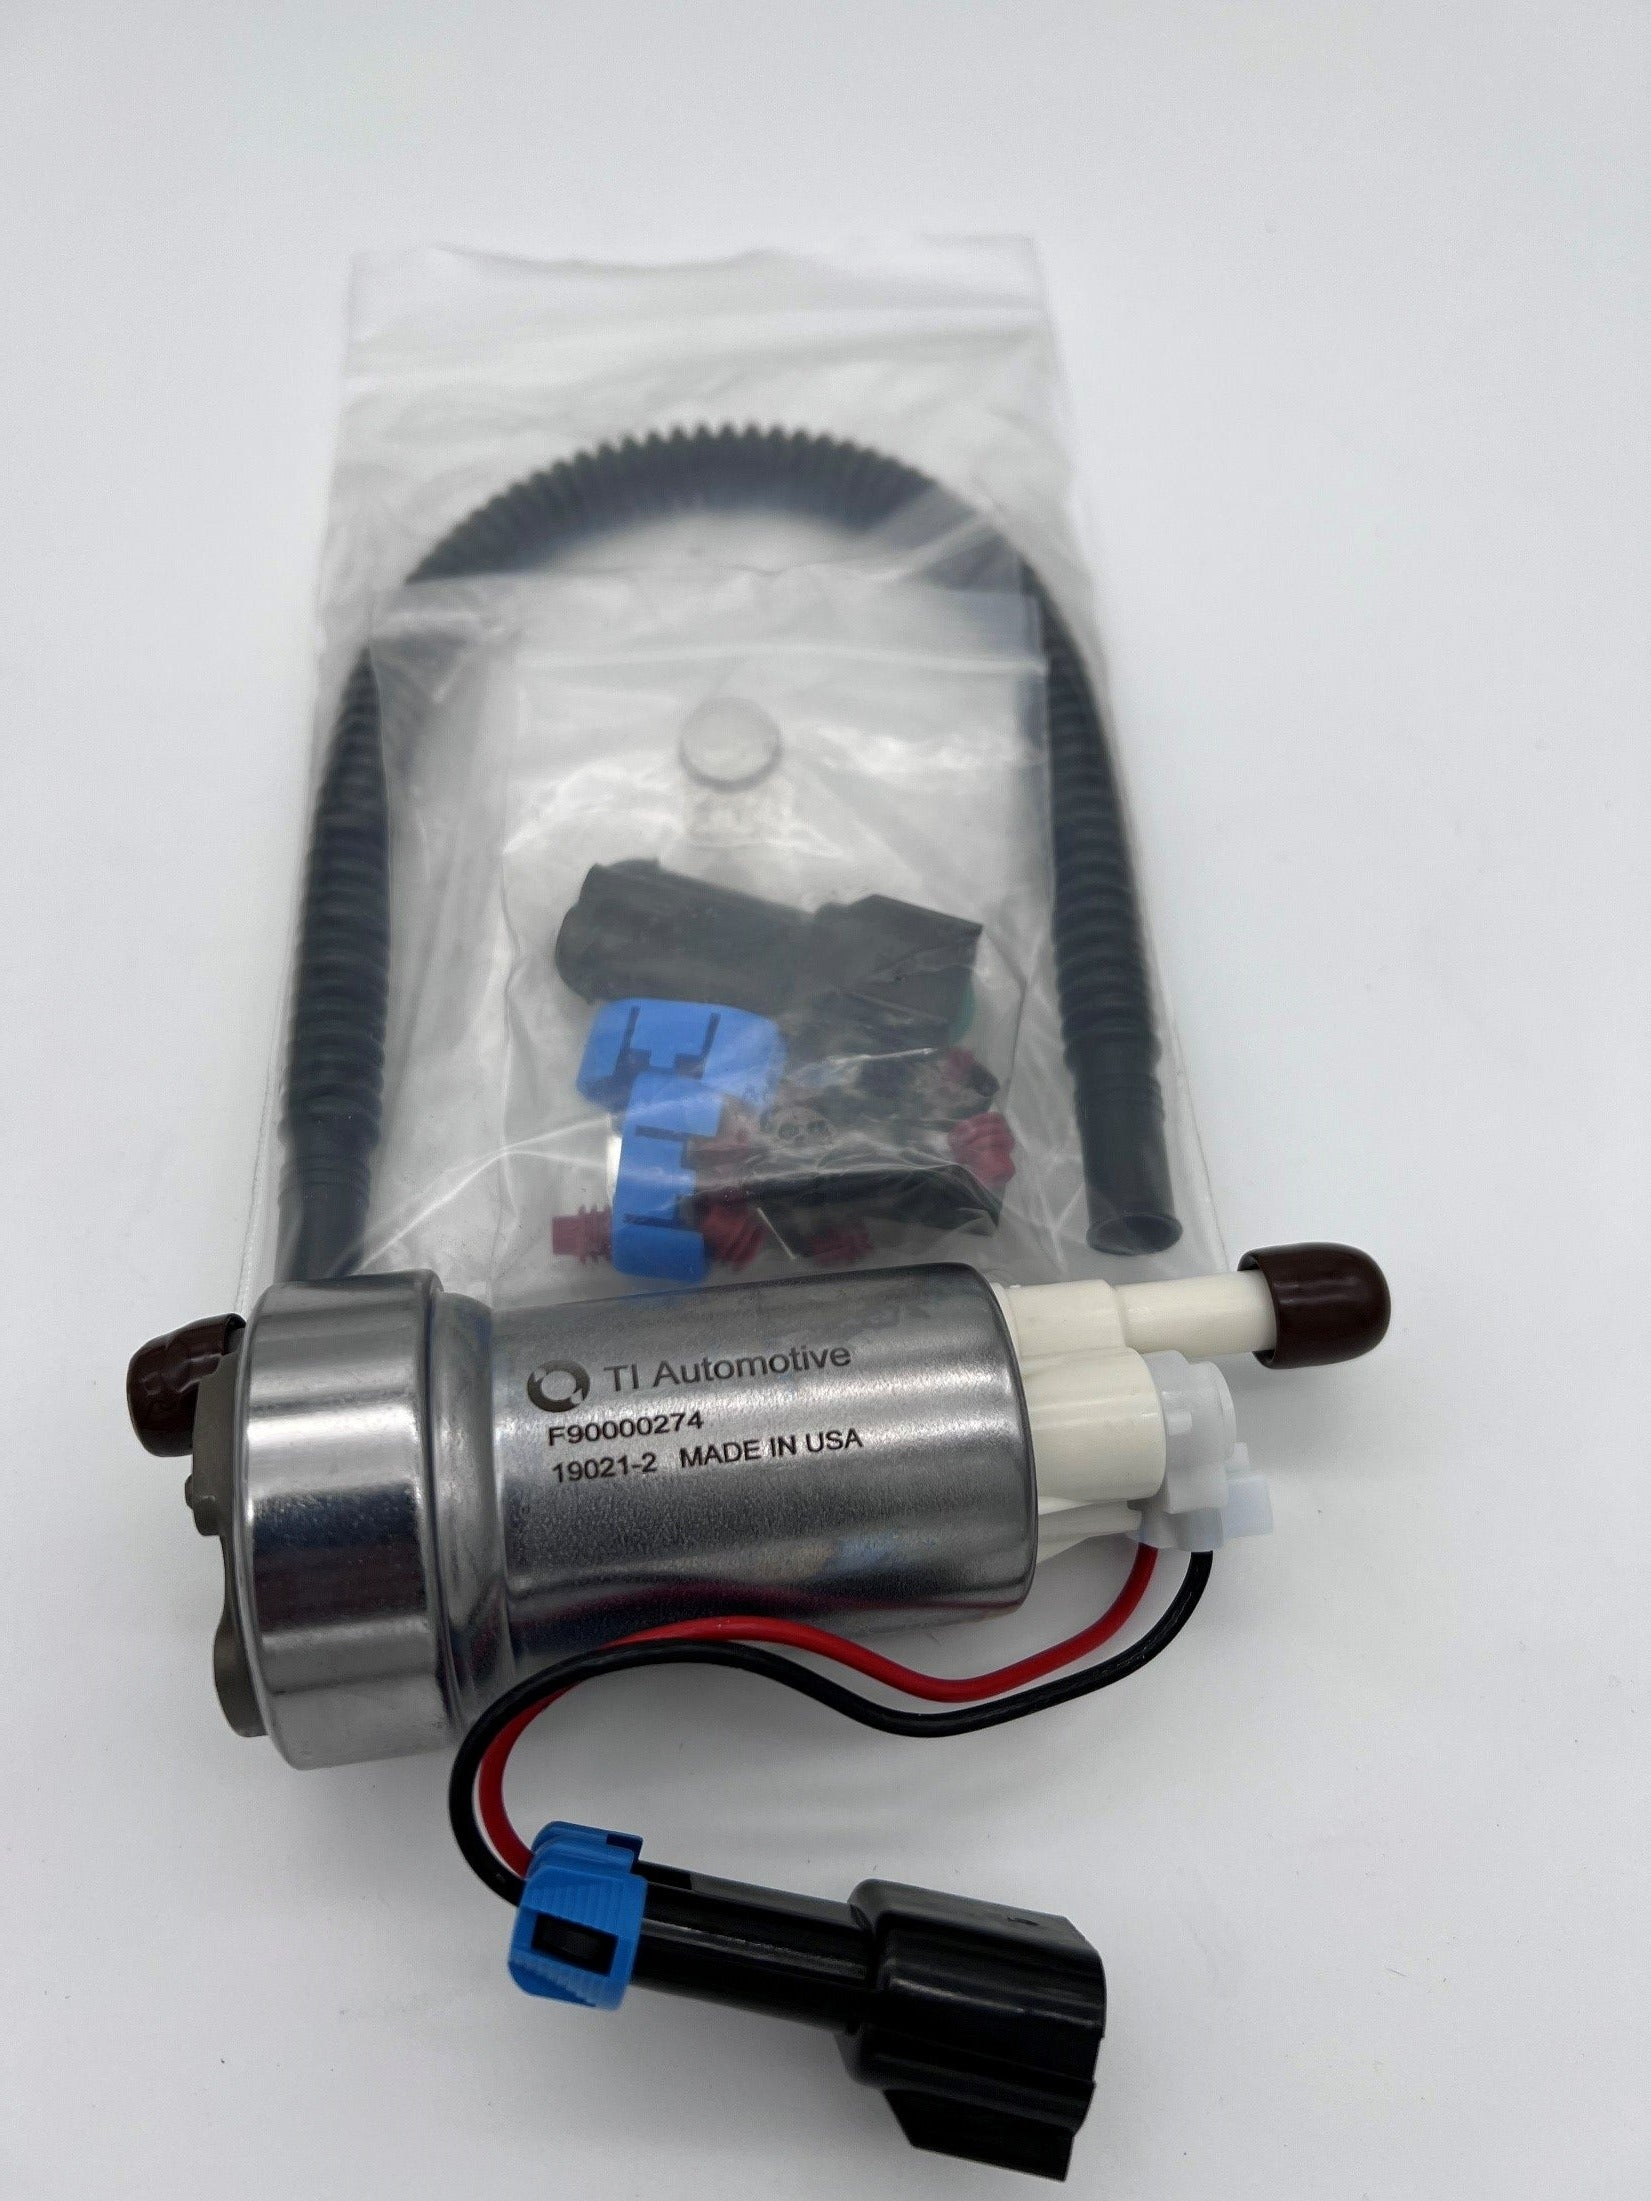 TI Automotive 450lph Fuel Pump Kit